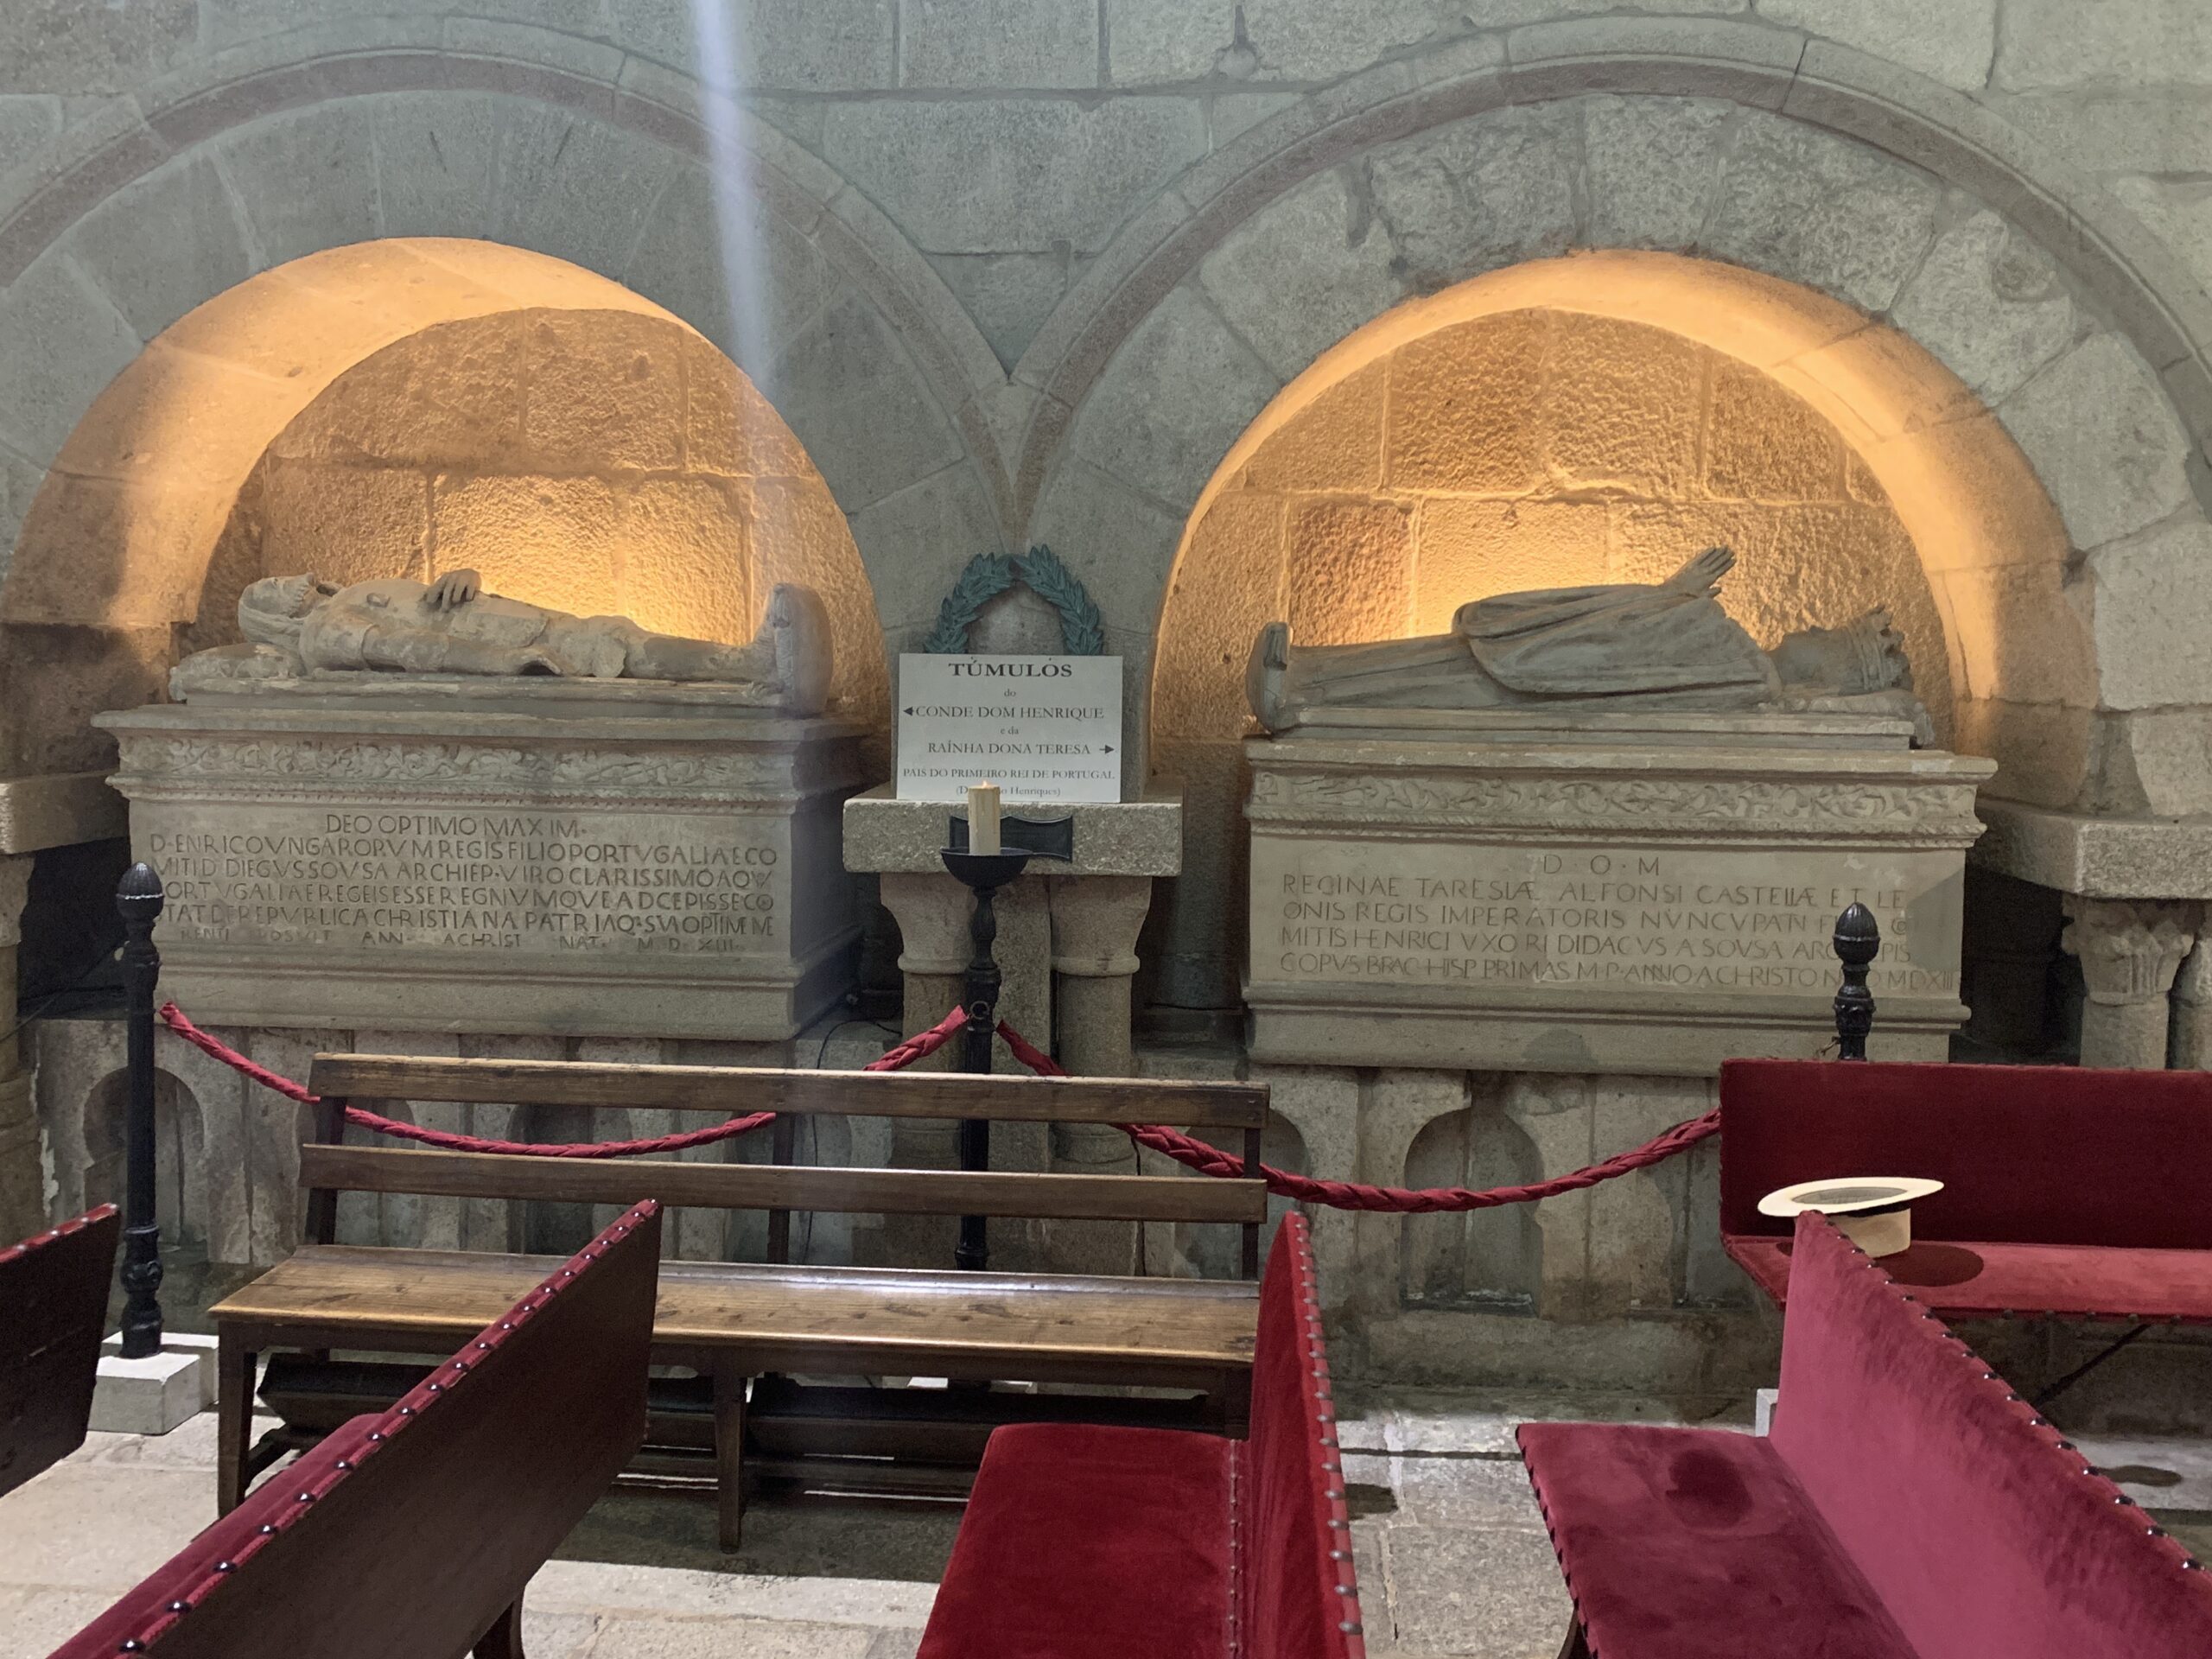 Tombs of Henrique de Borgonha and Teresa de Leão.